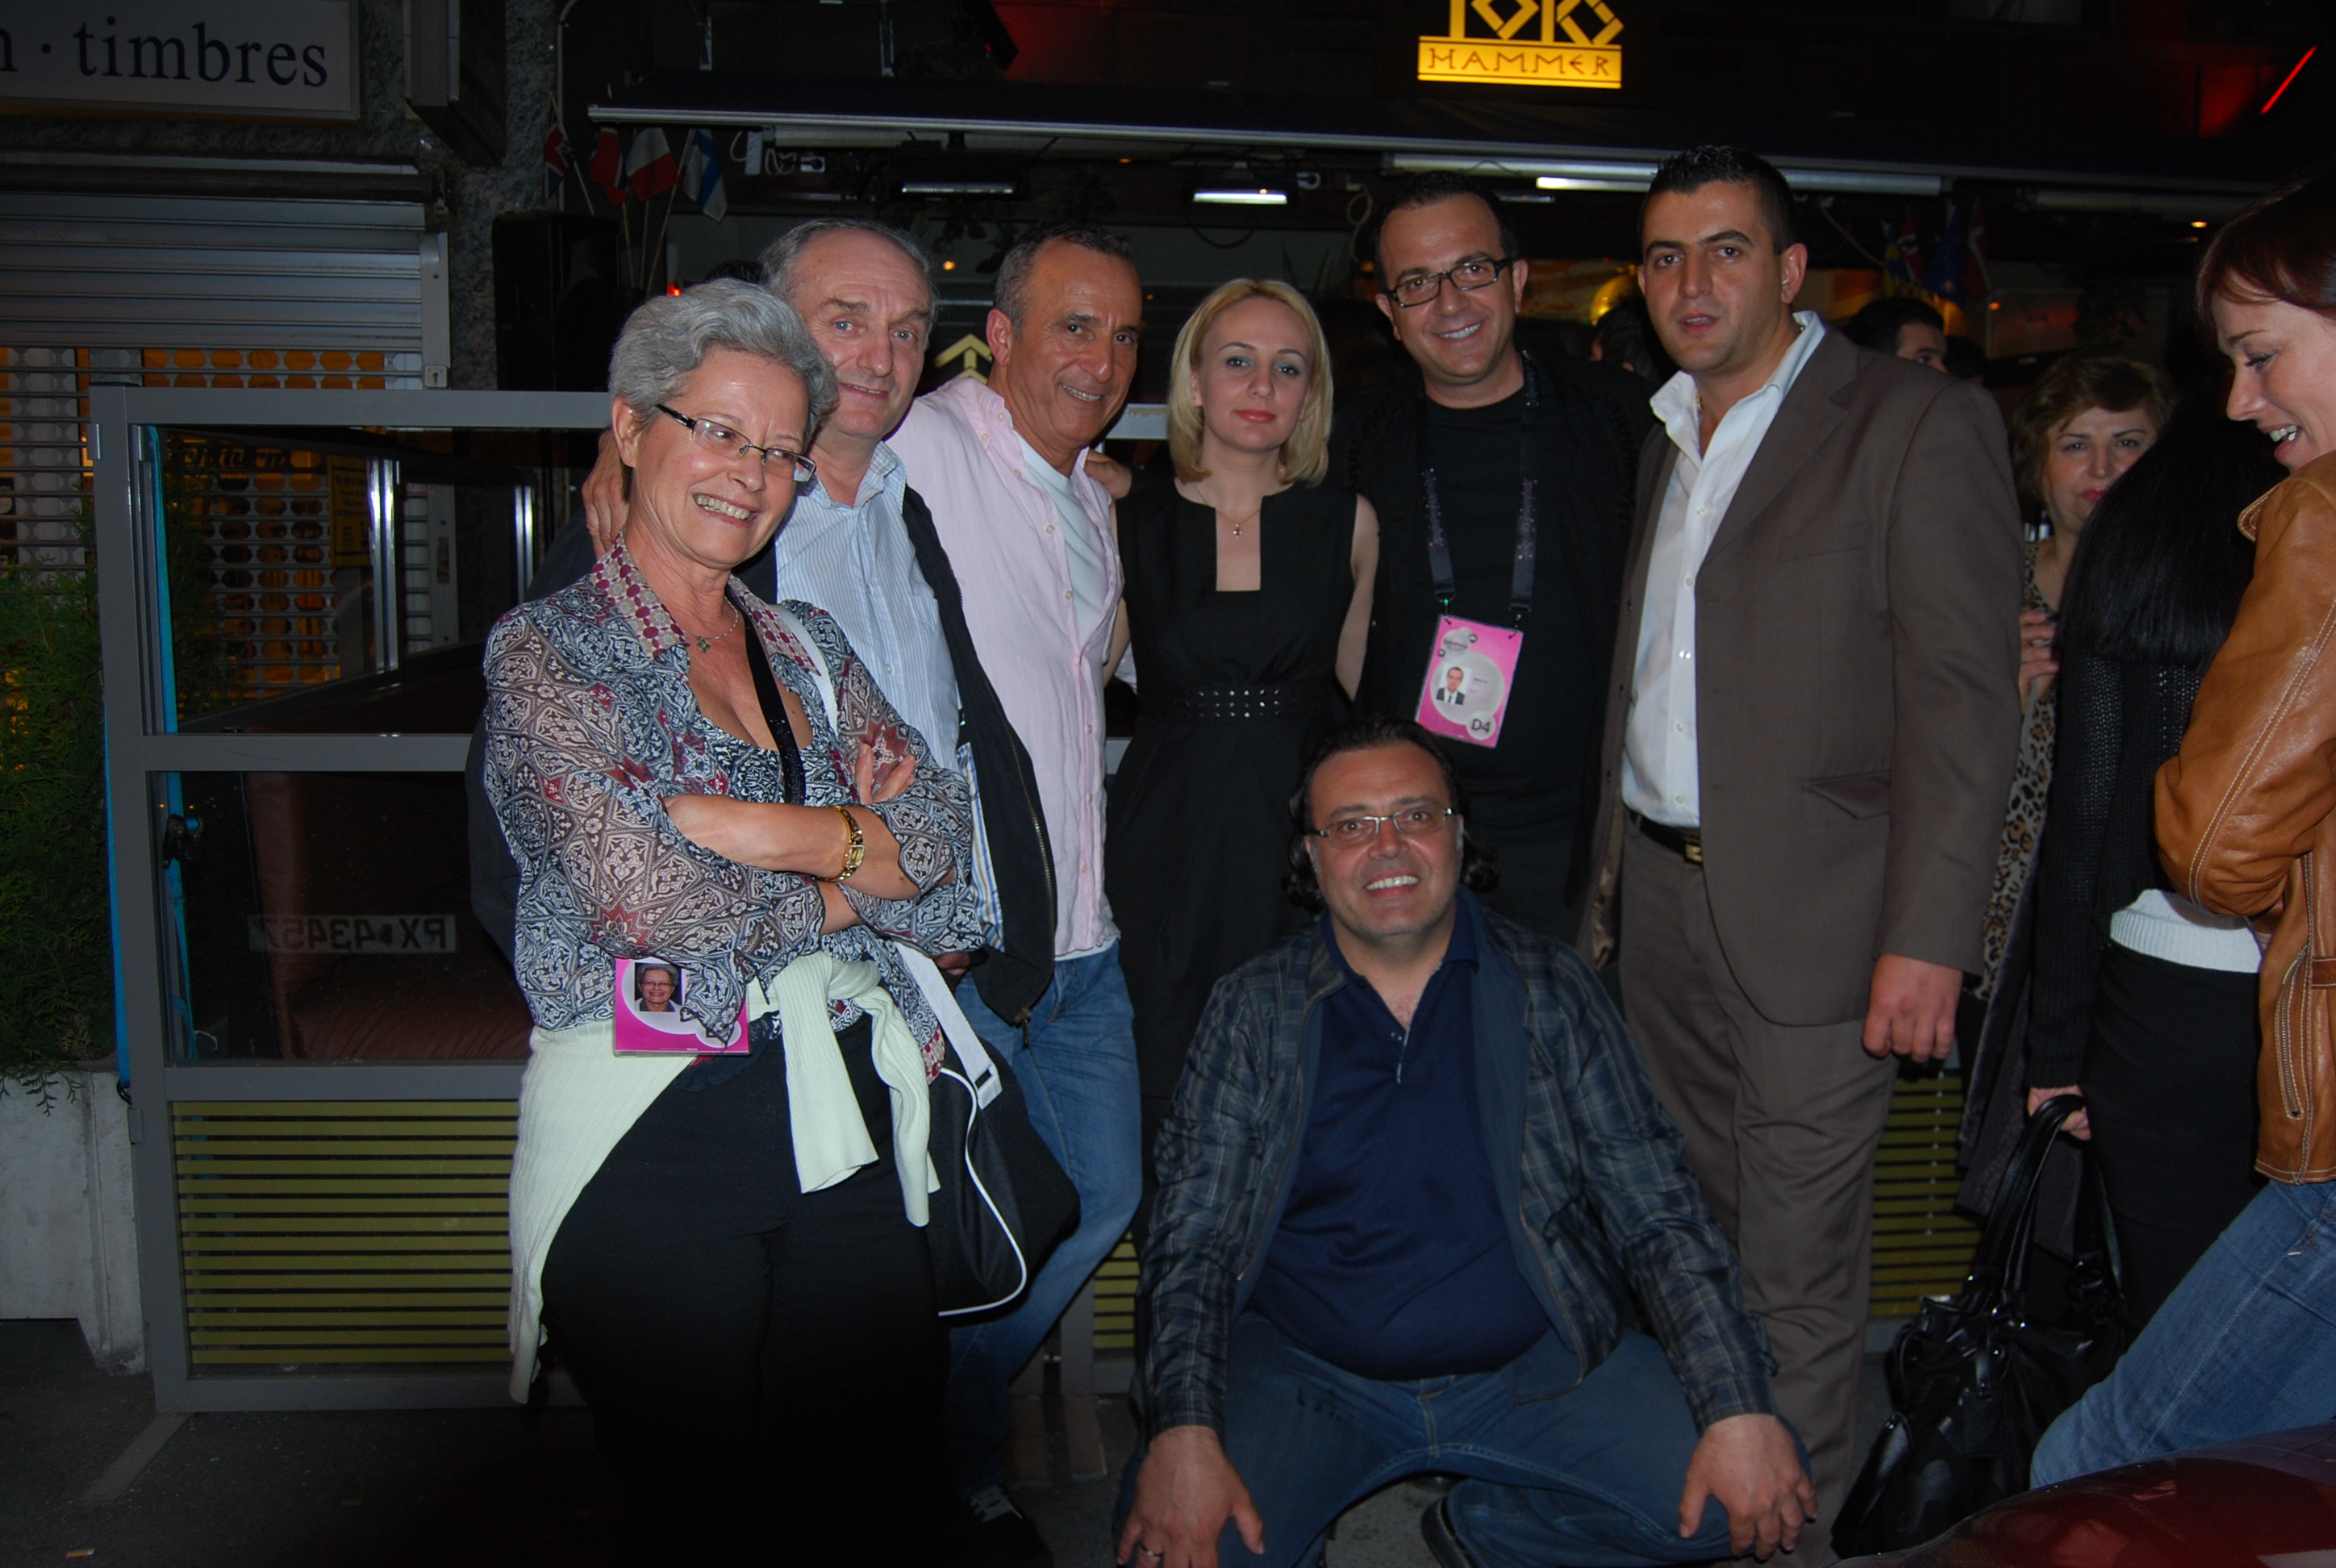 Eurovizioni 2010: Delegacioni shqiptarë po mikëpritet nga bashkatdhetarët tanë!